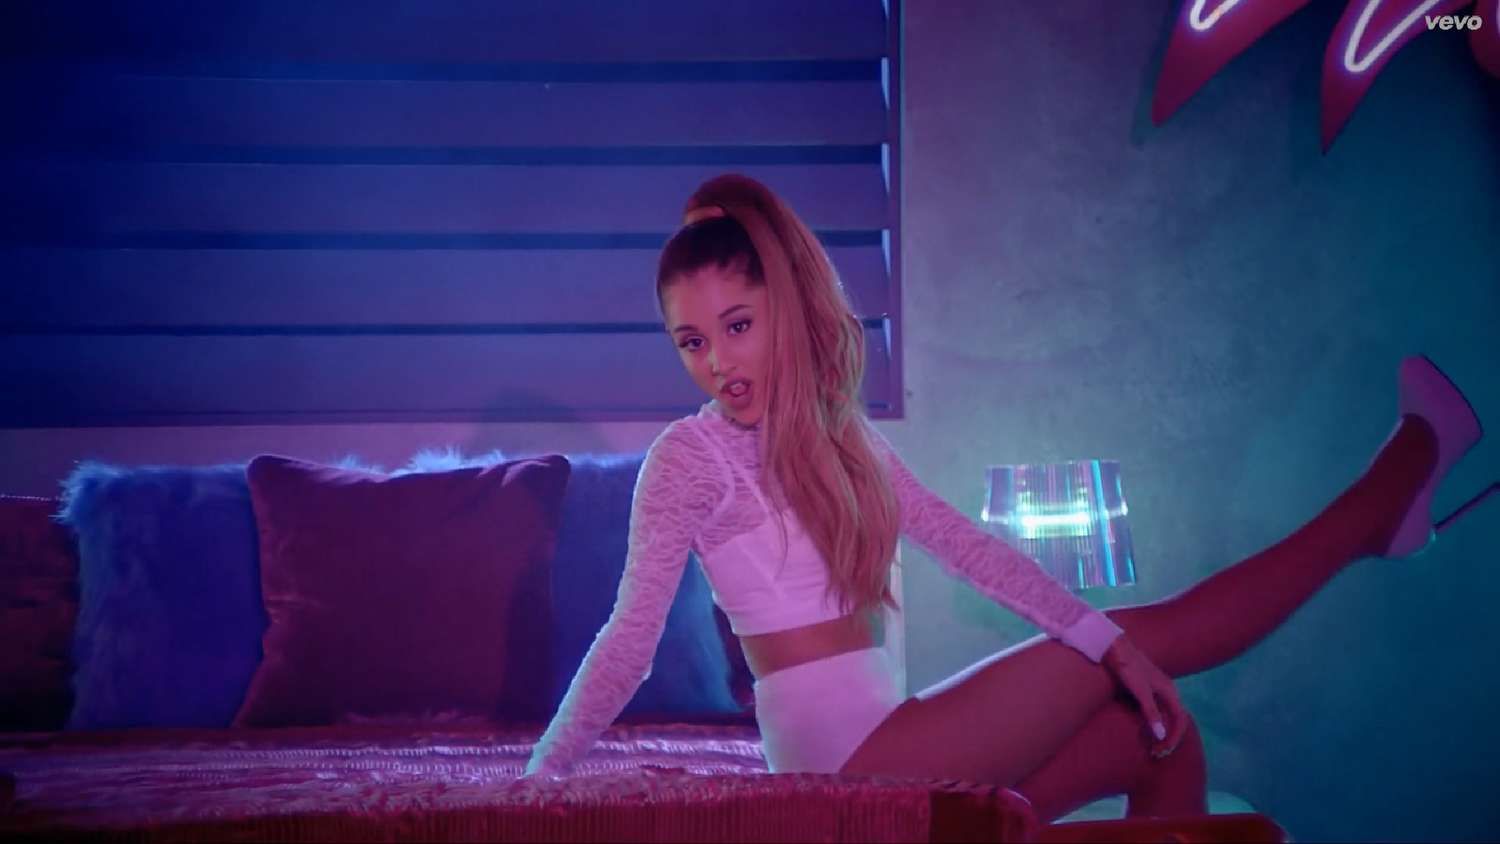 Ariana Grande in the Bang Bang music video